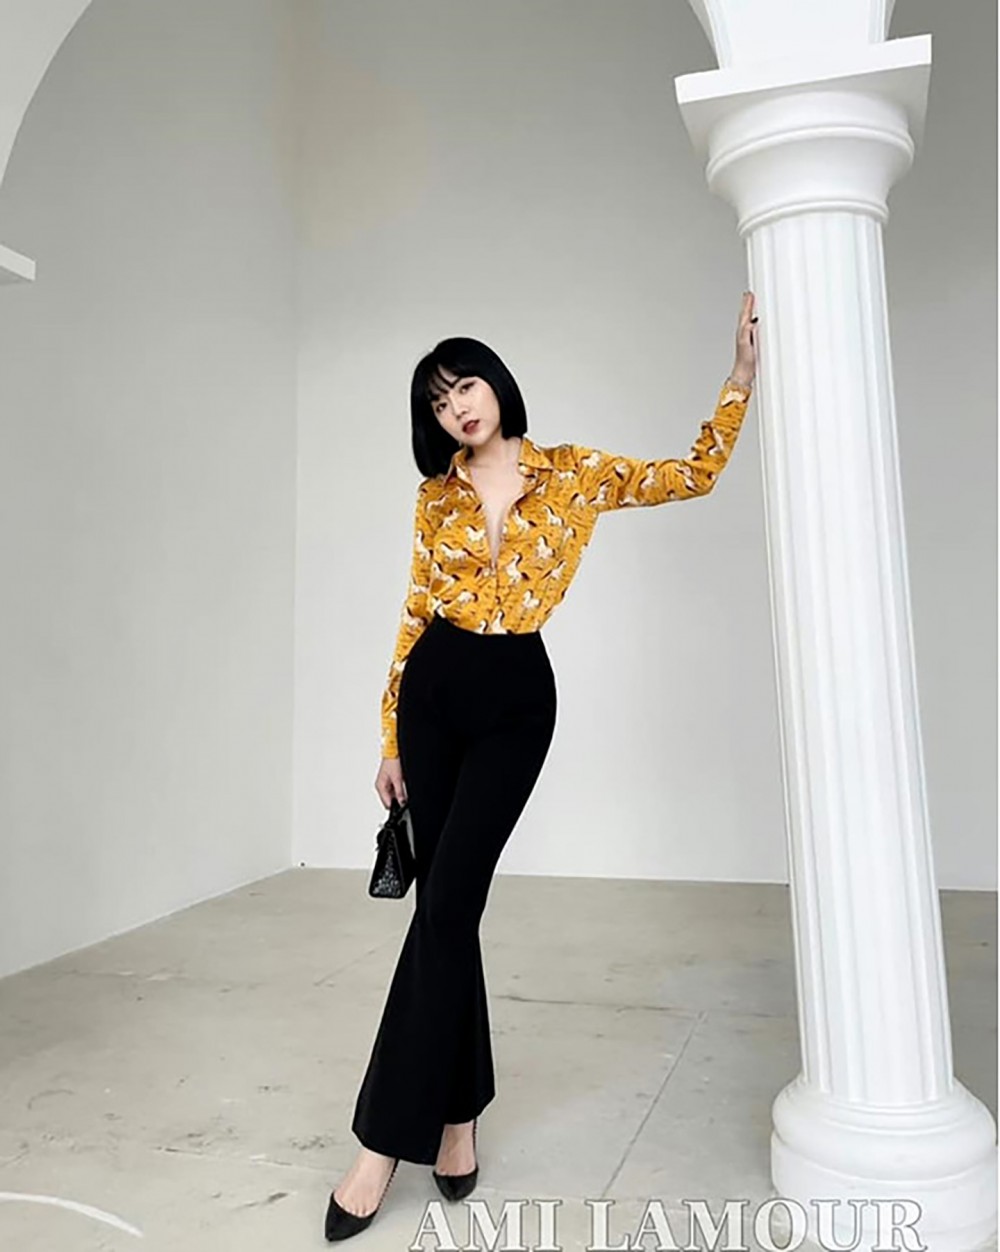 Ami Lamour – Thương hiệu thời trang thiết kế cao cấp dành cho phái đẹp